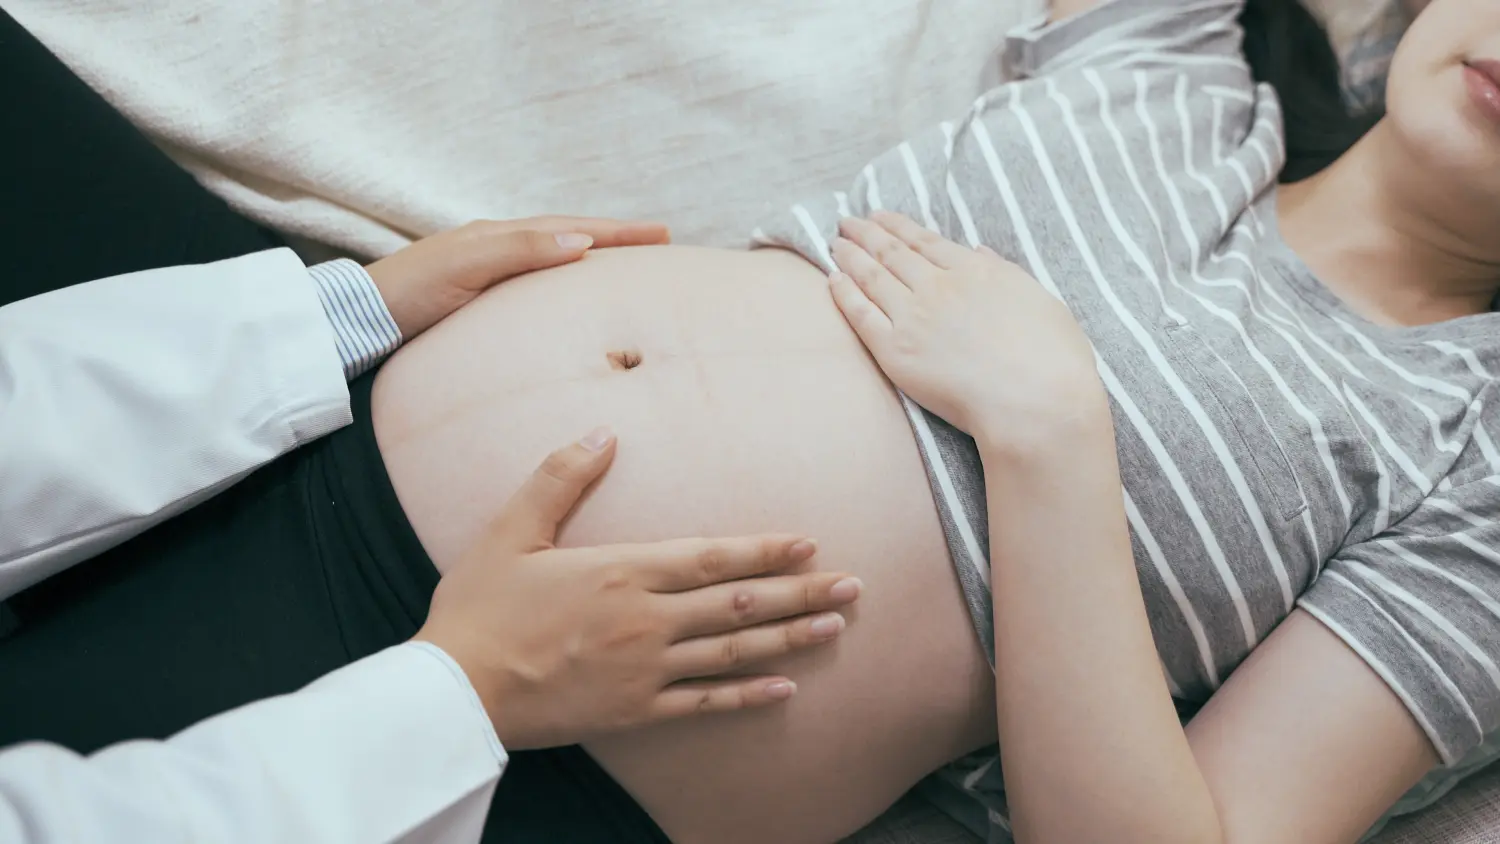 Hebamme überprüft den Herzschlag und die Bewegung des Babys, während sie der schwangeren Frau die Hände auf den nackten Bauch legt. Unbekanntes weibliches medizinisches Personal in weißem Gewand, das sich berührt